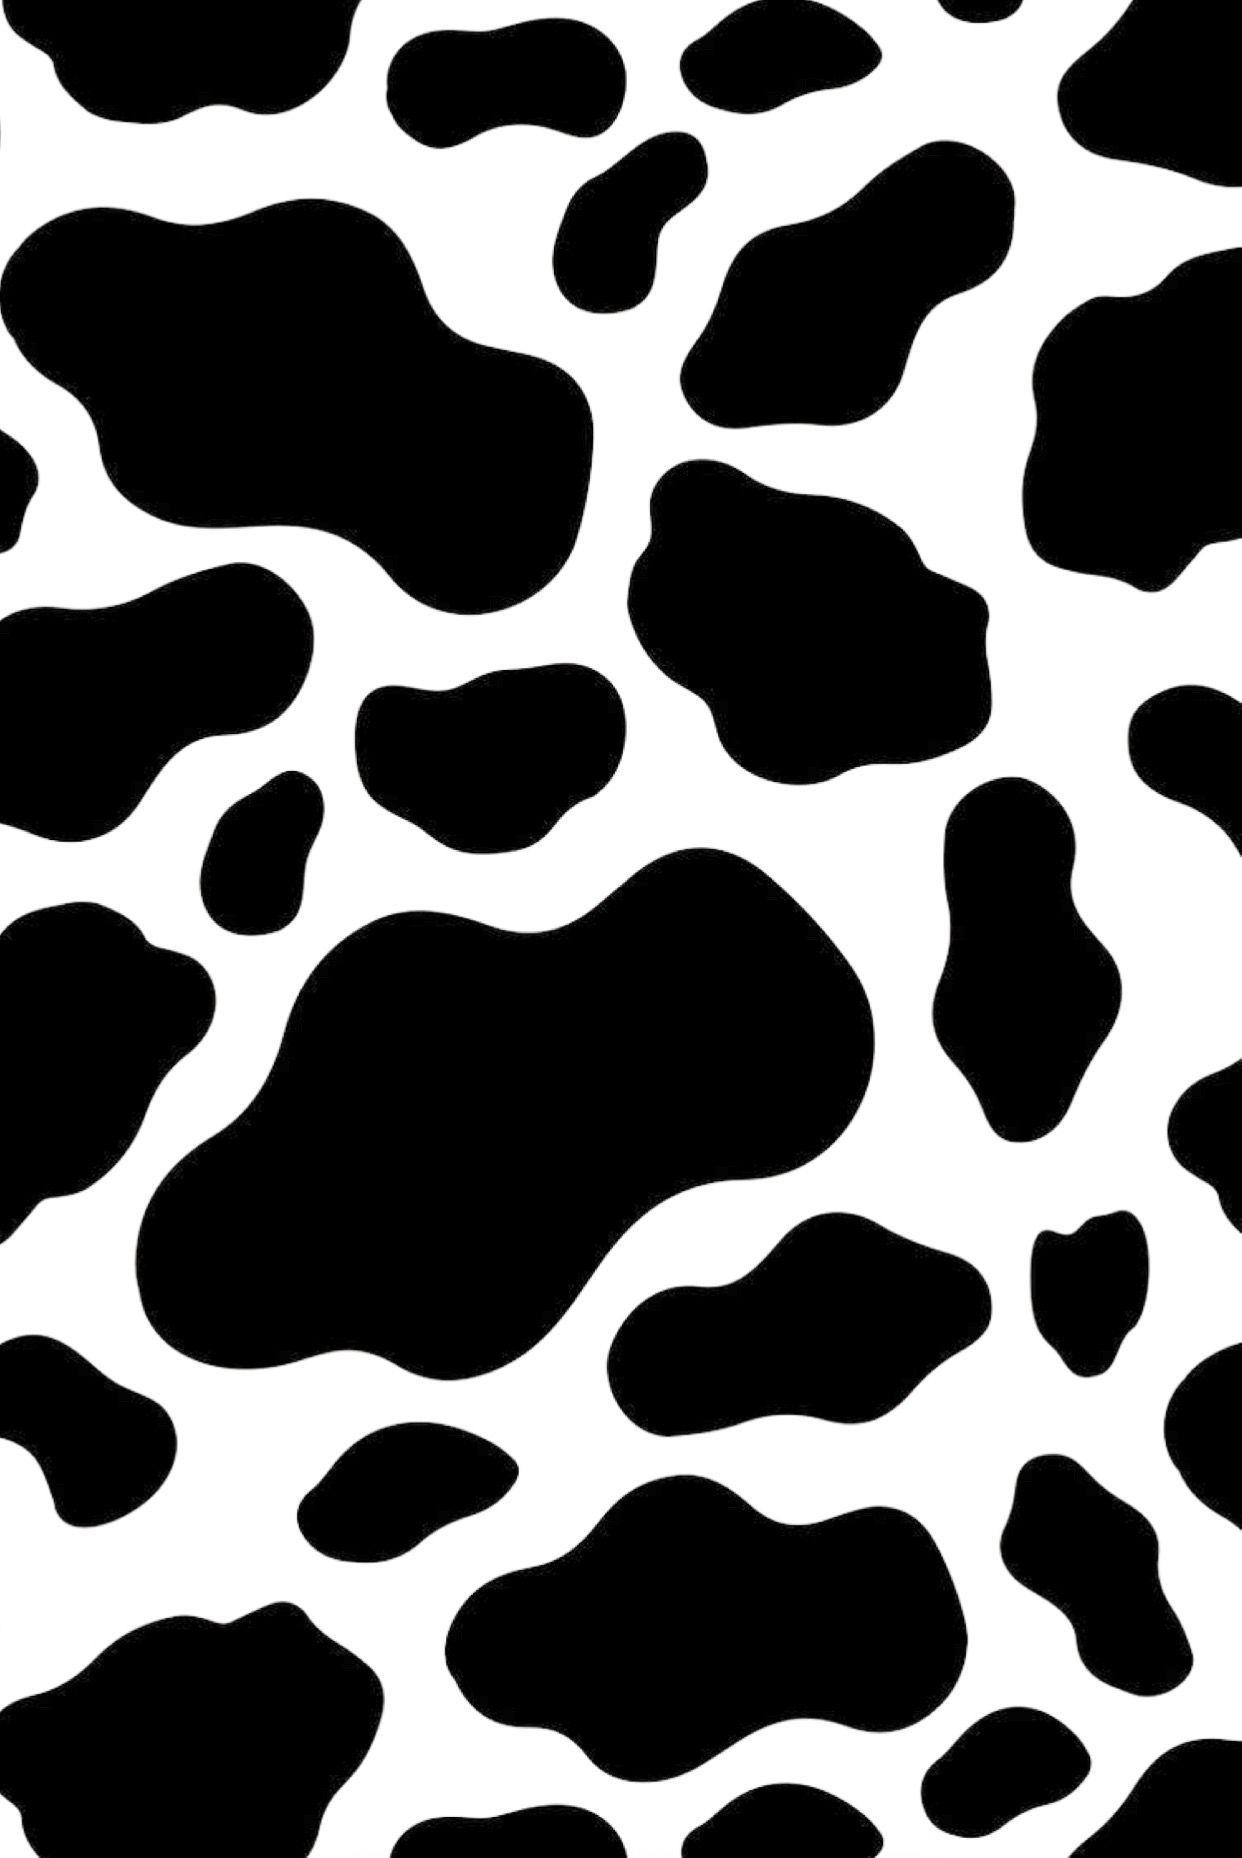 Nền đen trắng với họa tiết bò sẽ đem đến cho bạn một trải nghiệm thú vị, tươi mới và đầy sinh động. Những chấm tròn trên nền đen đem lại một sự nhẹ nhàng và ấm áp cho thiết bị của bạn. Hãy khám phá ngay bức ảnh liên quan đến từ khoá mẫu nền bò này.